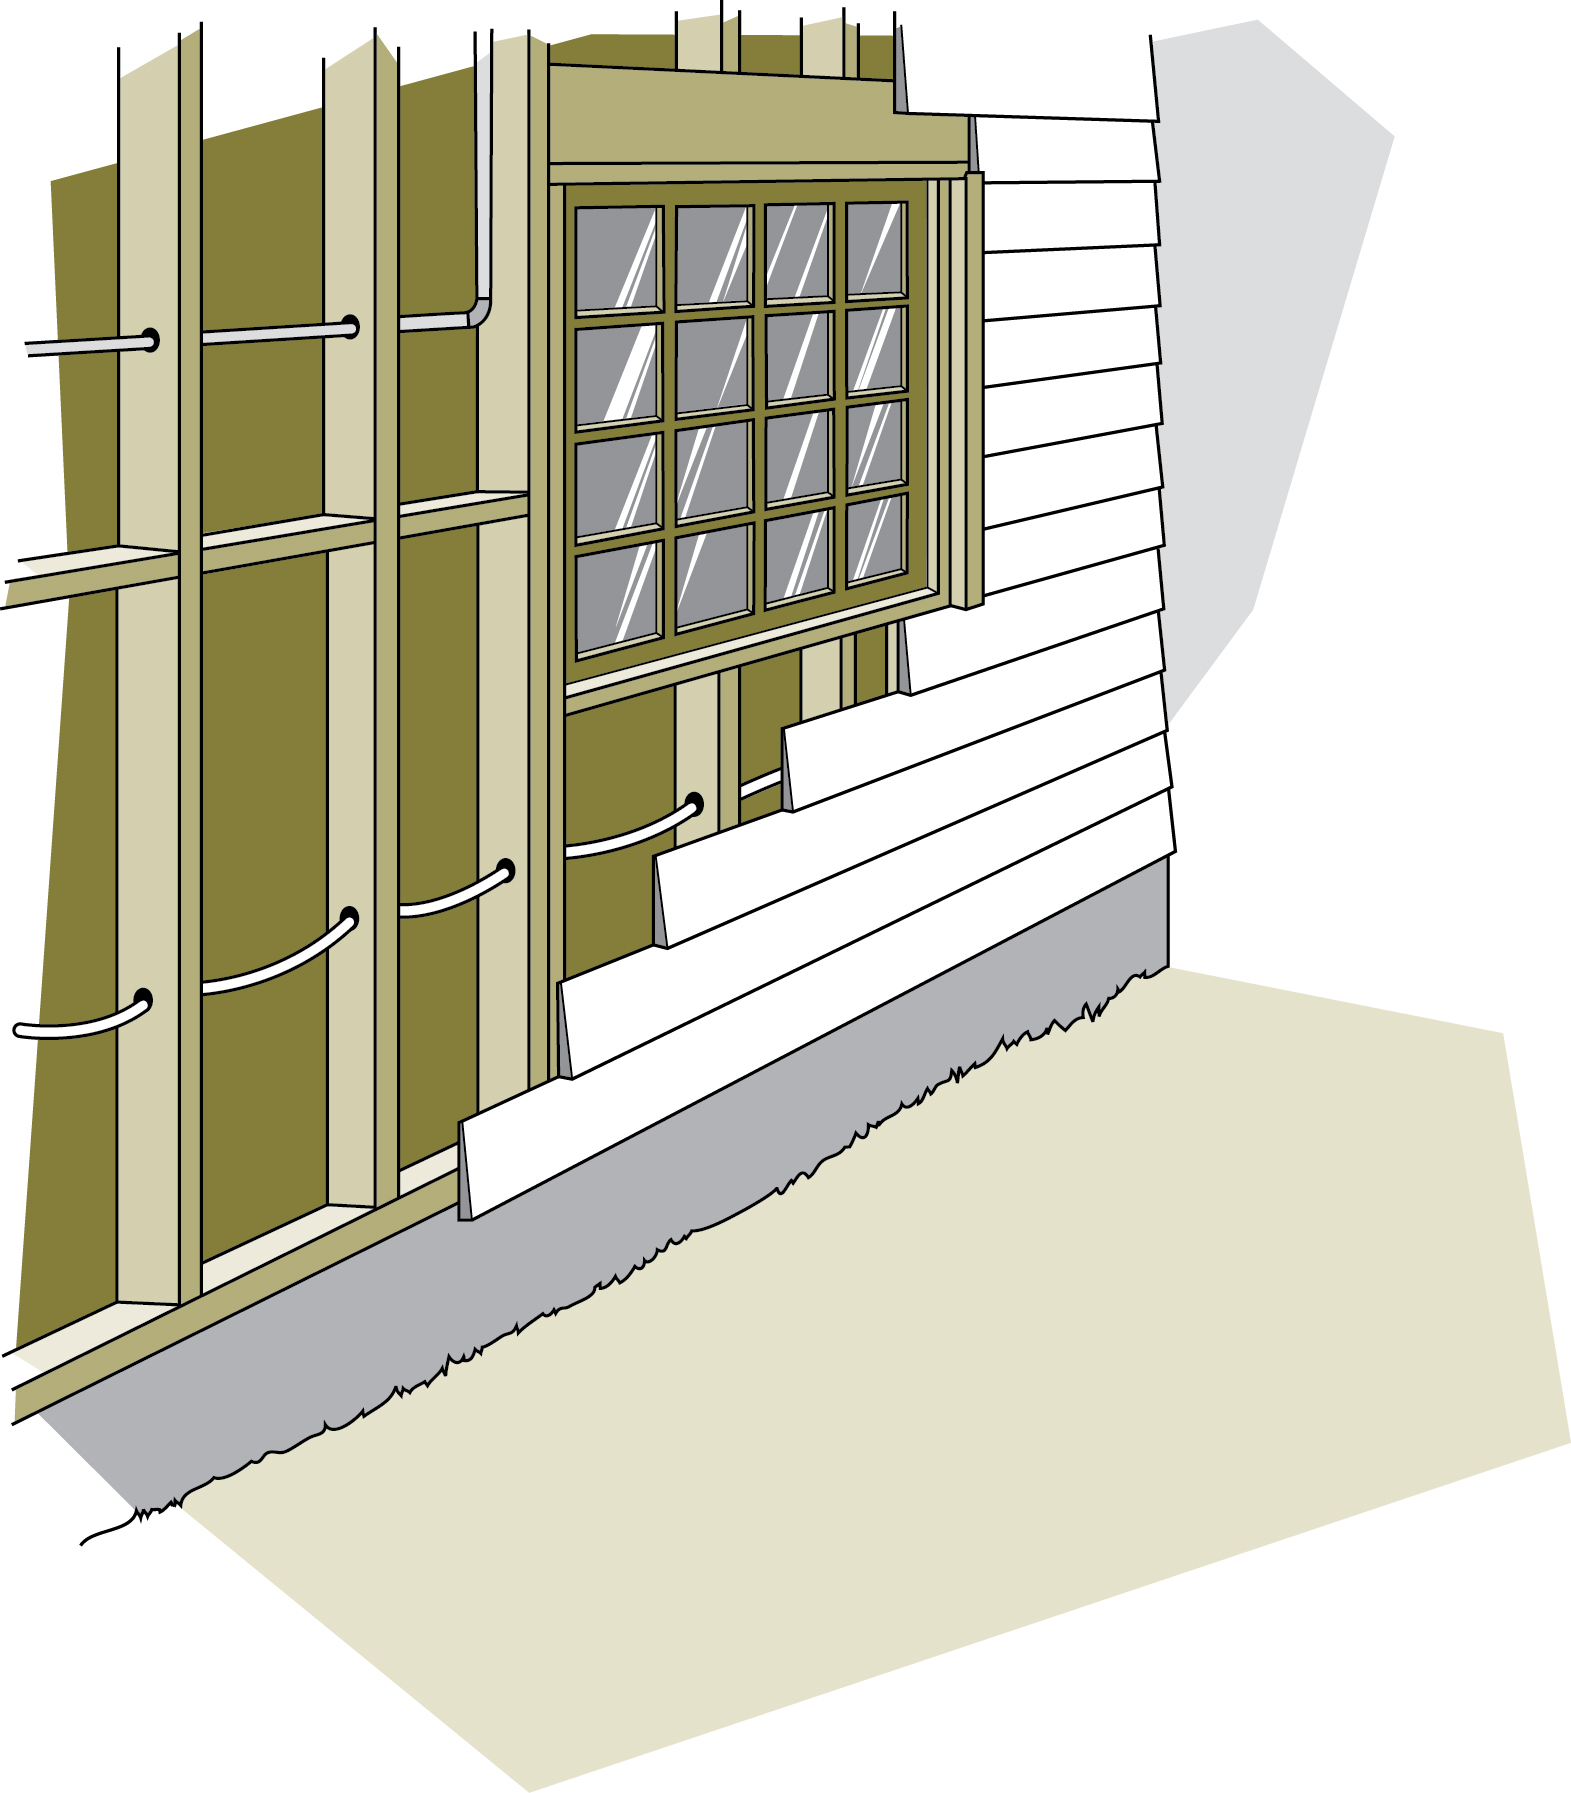 Figure 7-4 Les obstacles possibles dans le mur comprennent les fils électriques, les tuyaux, le blocage, les portes et fenêtres